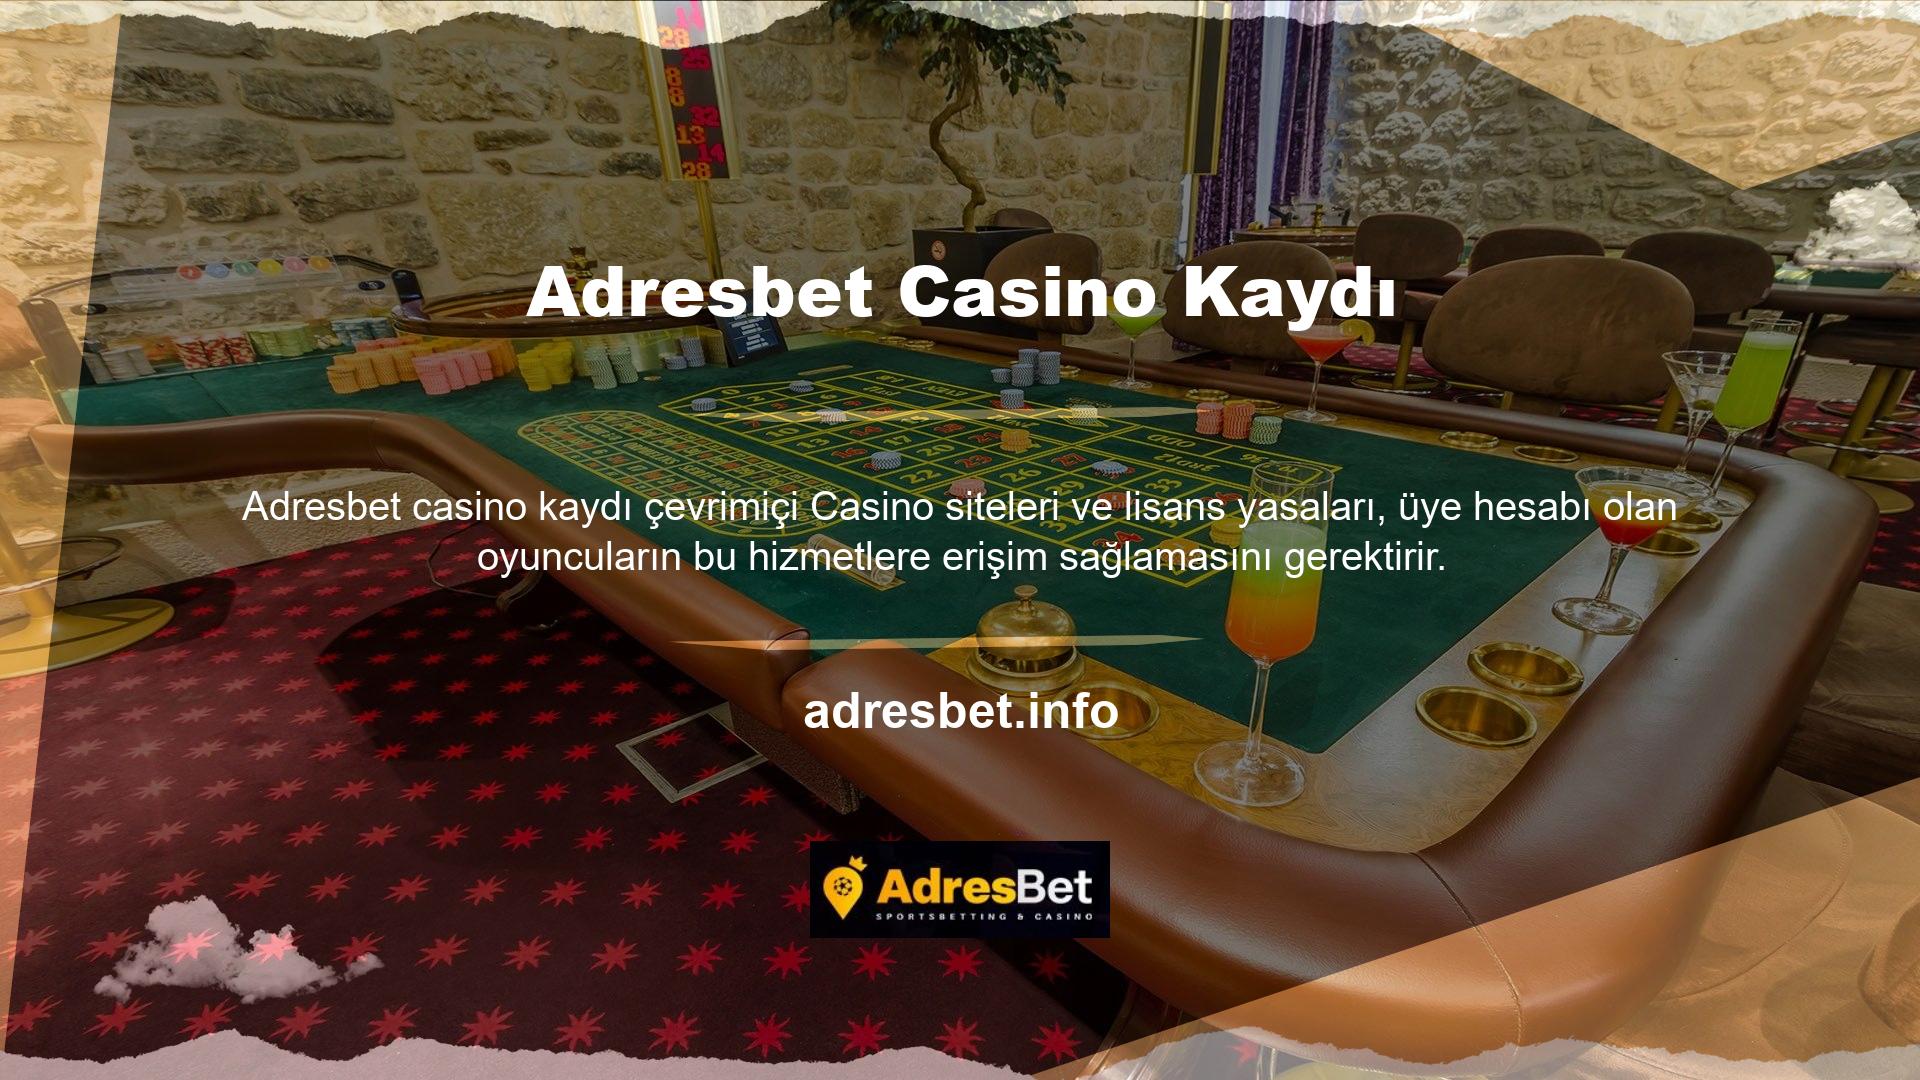 Casino Adresbet üye olduktan sonra kullanıcının üyelik hüküm ve koşullarını okuması ve memnun kaldıktan sonra kayıt işlemini tamamlaması gerekecektir